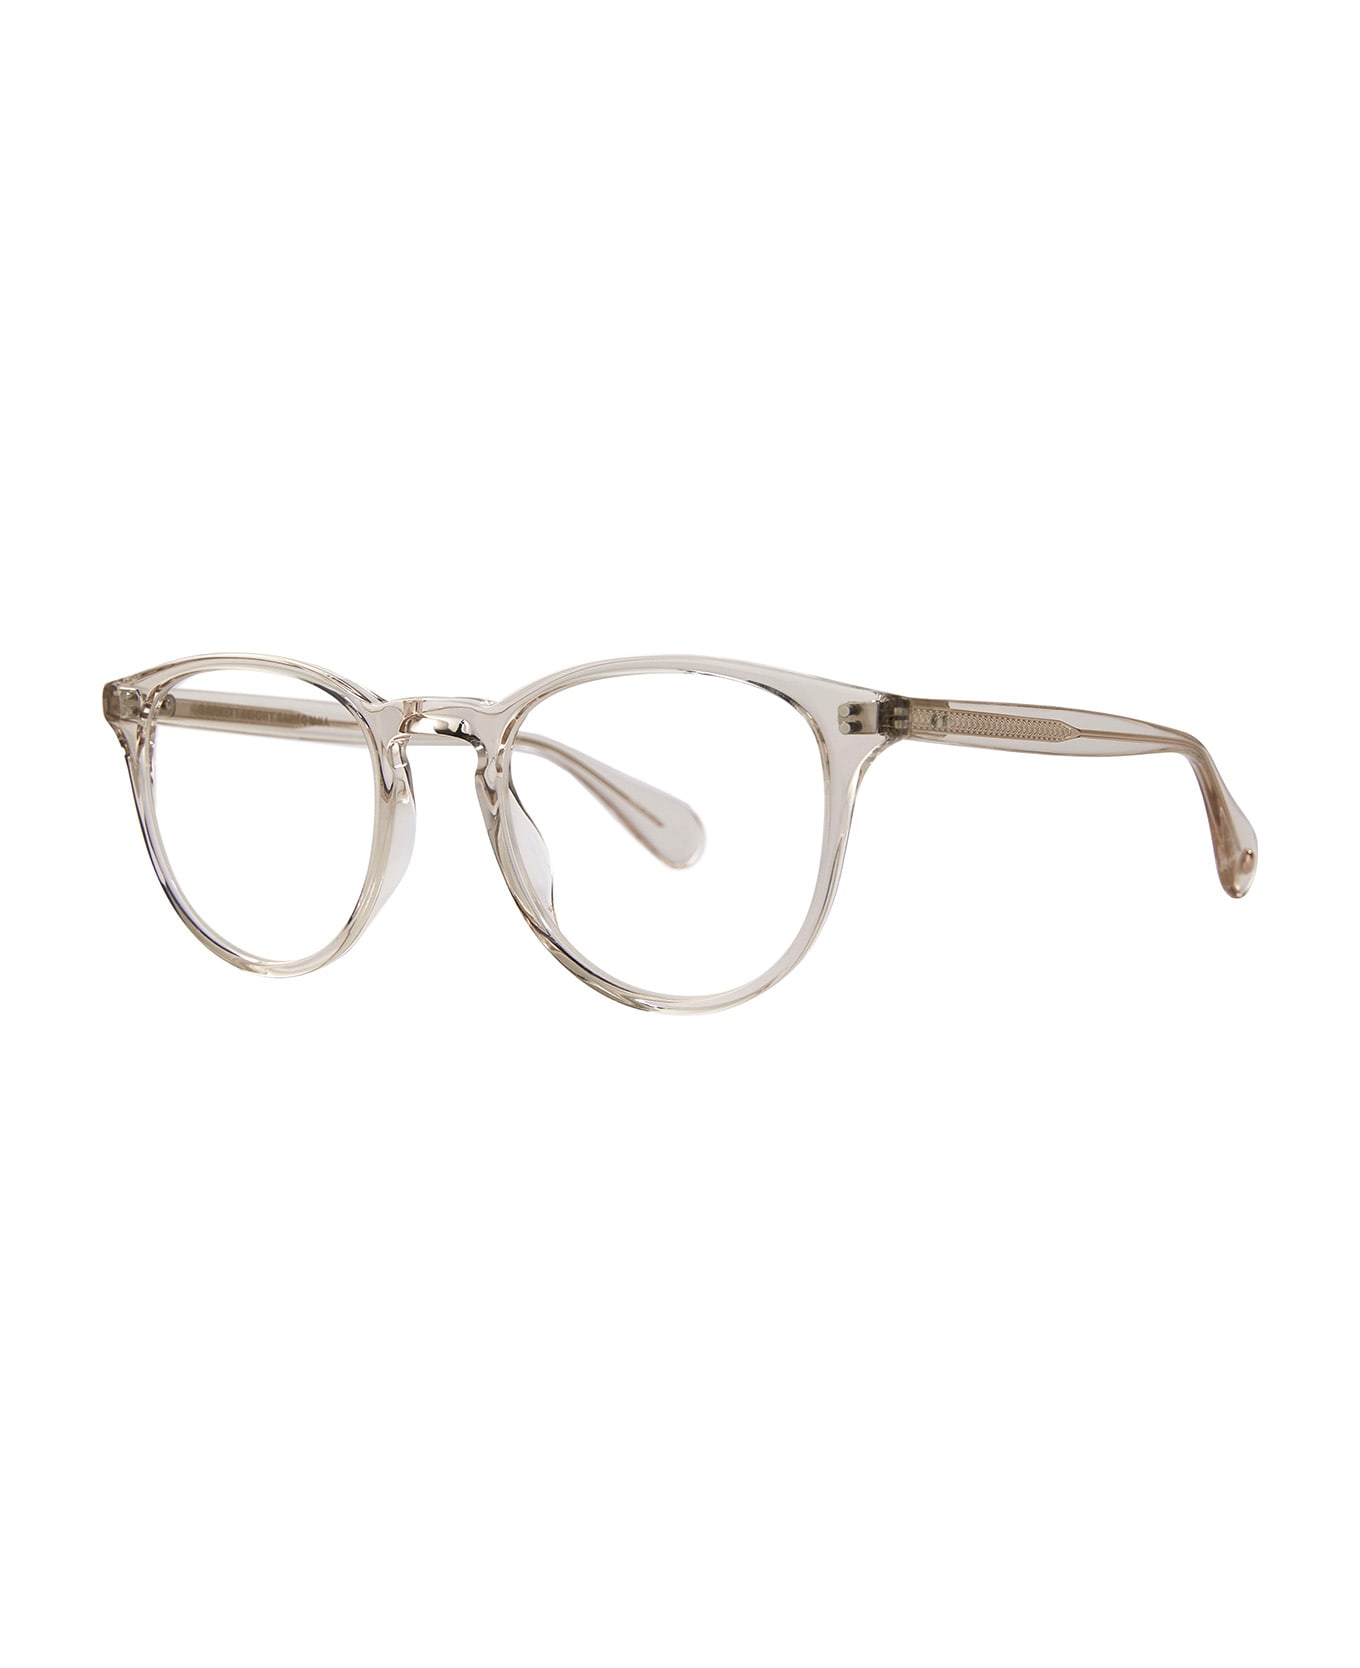 Garrett Leight Manzanita Prosecco Glasses - Prosecco